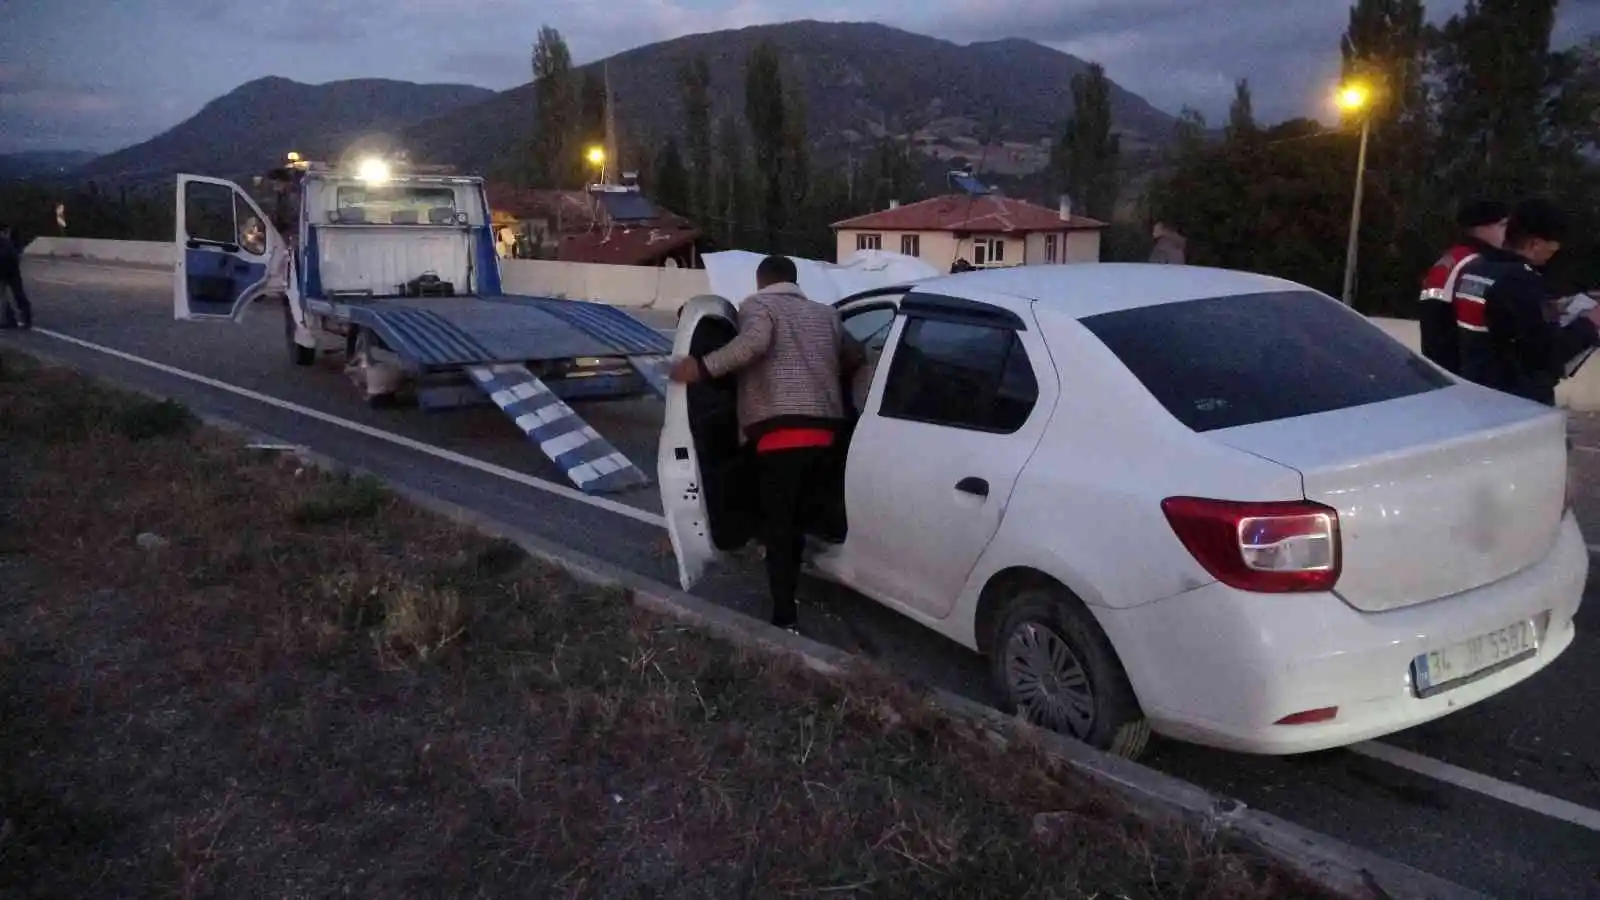 Tokat’ta iki otomobil çarpıştı: 1 ölü, 2 yaralı
